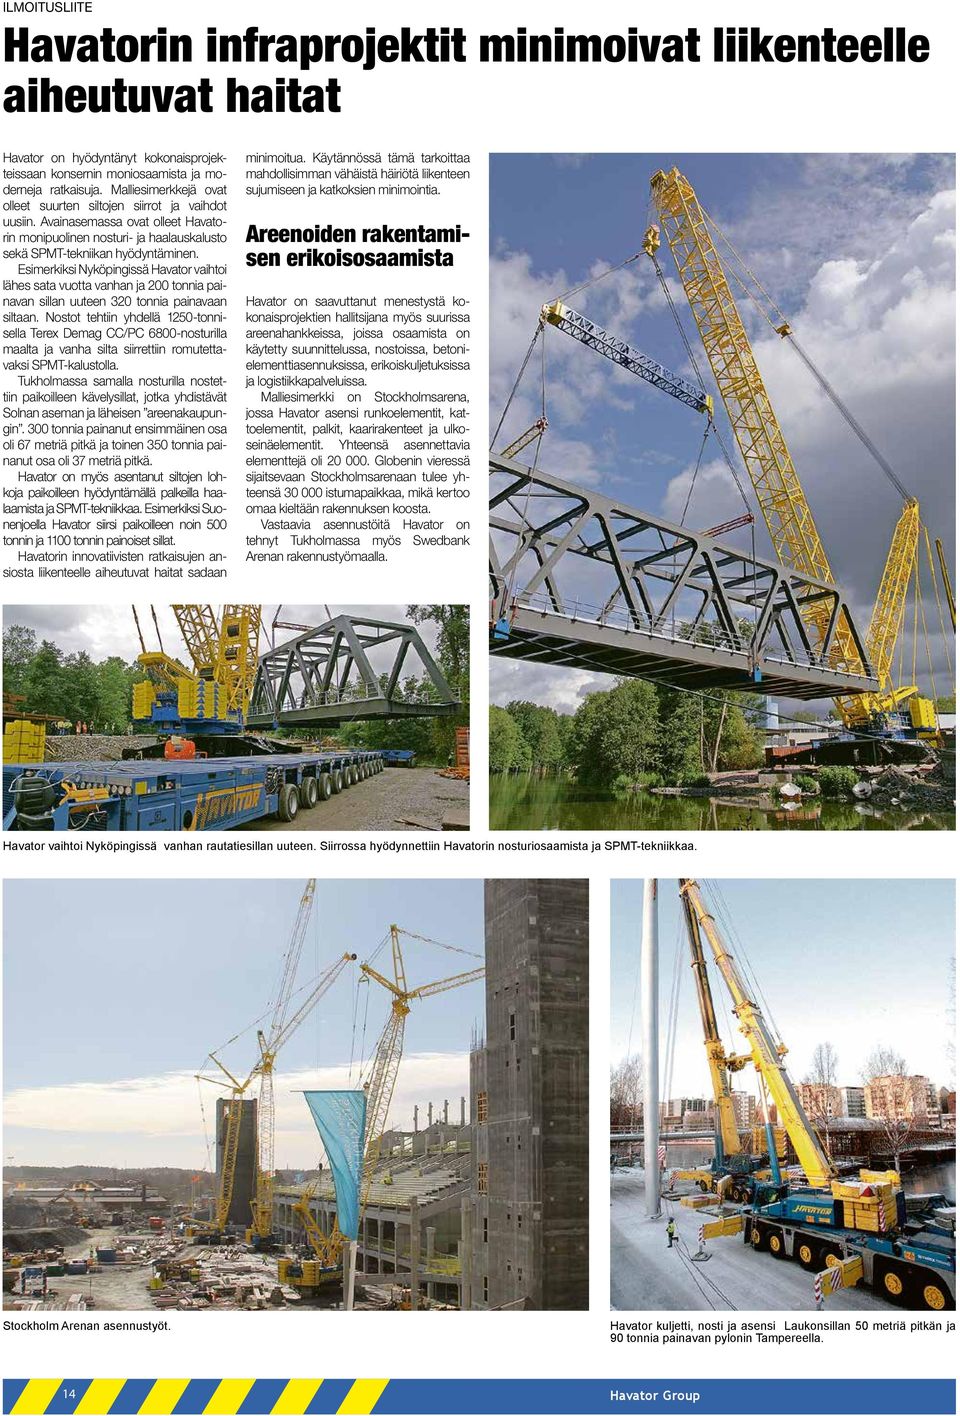 Esimerkiksi Nyköpingissä Havator vaihtoi lähes sata vuotta vanhan ja 200 tonnia painavan sillan uuteen 320 tonnia painavaan siltaan.